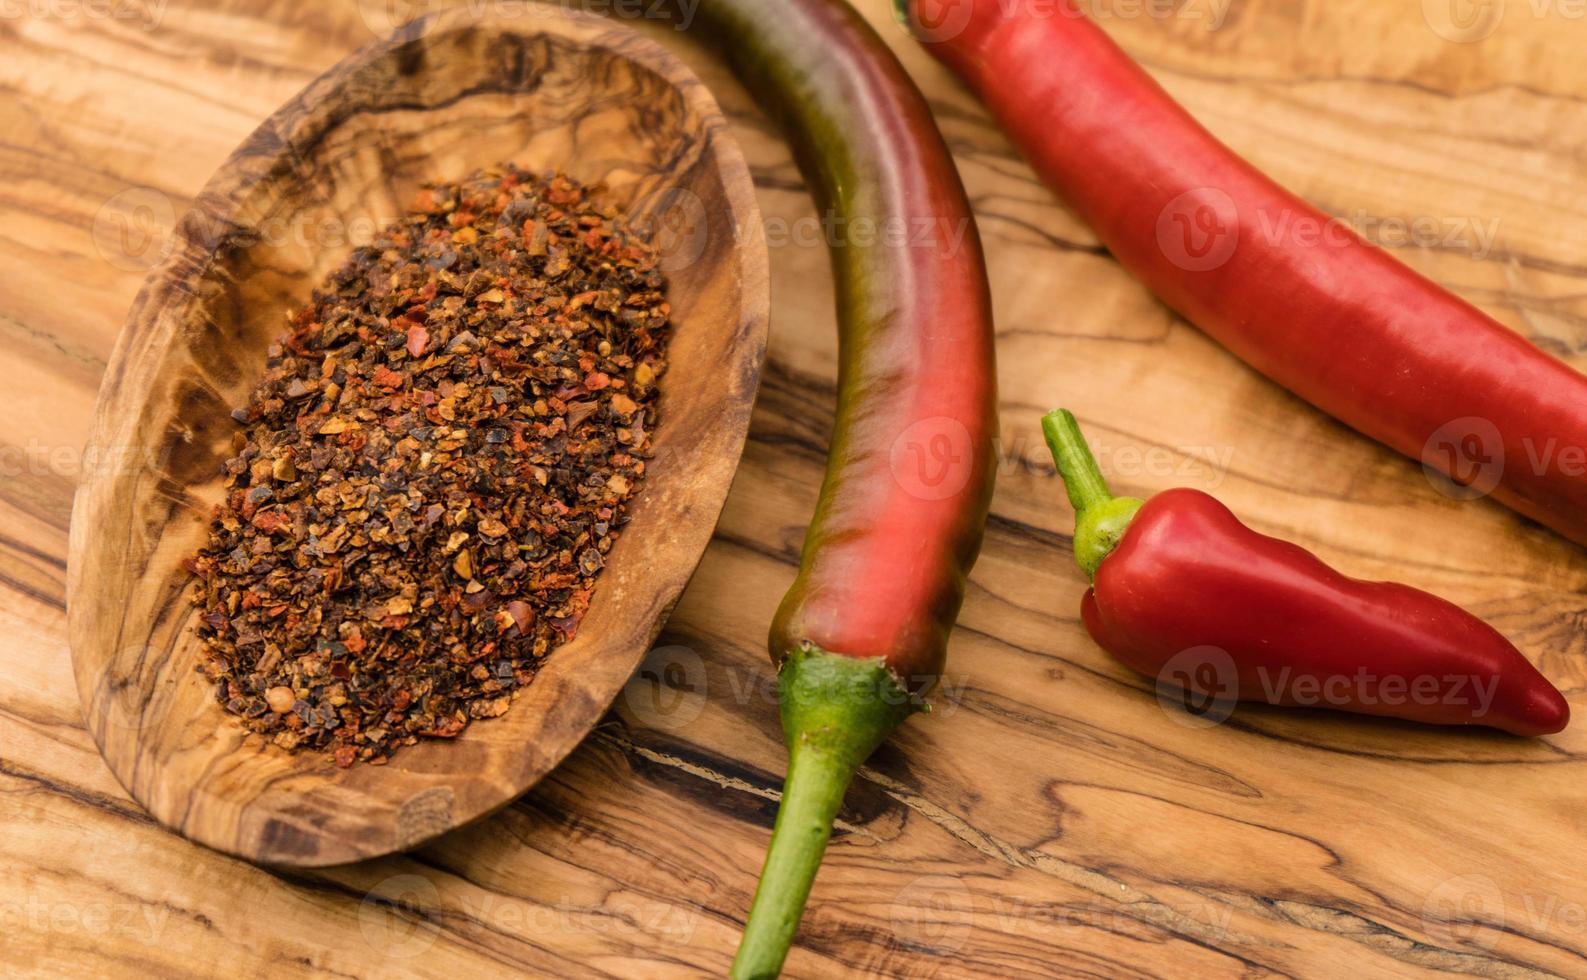 röd chili peppar kryddig grönsak foto